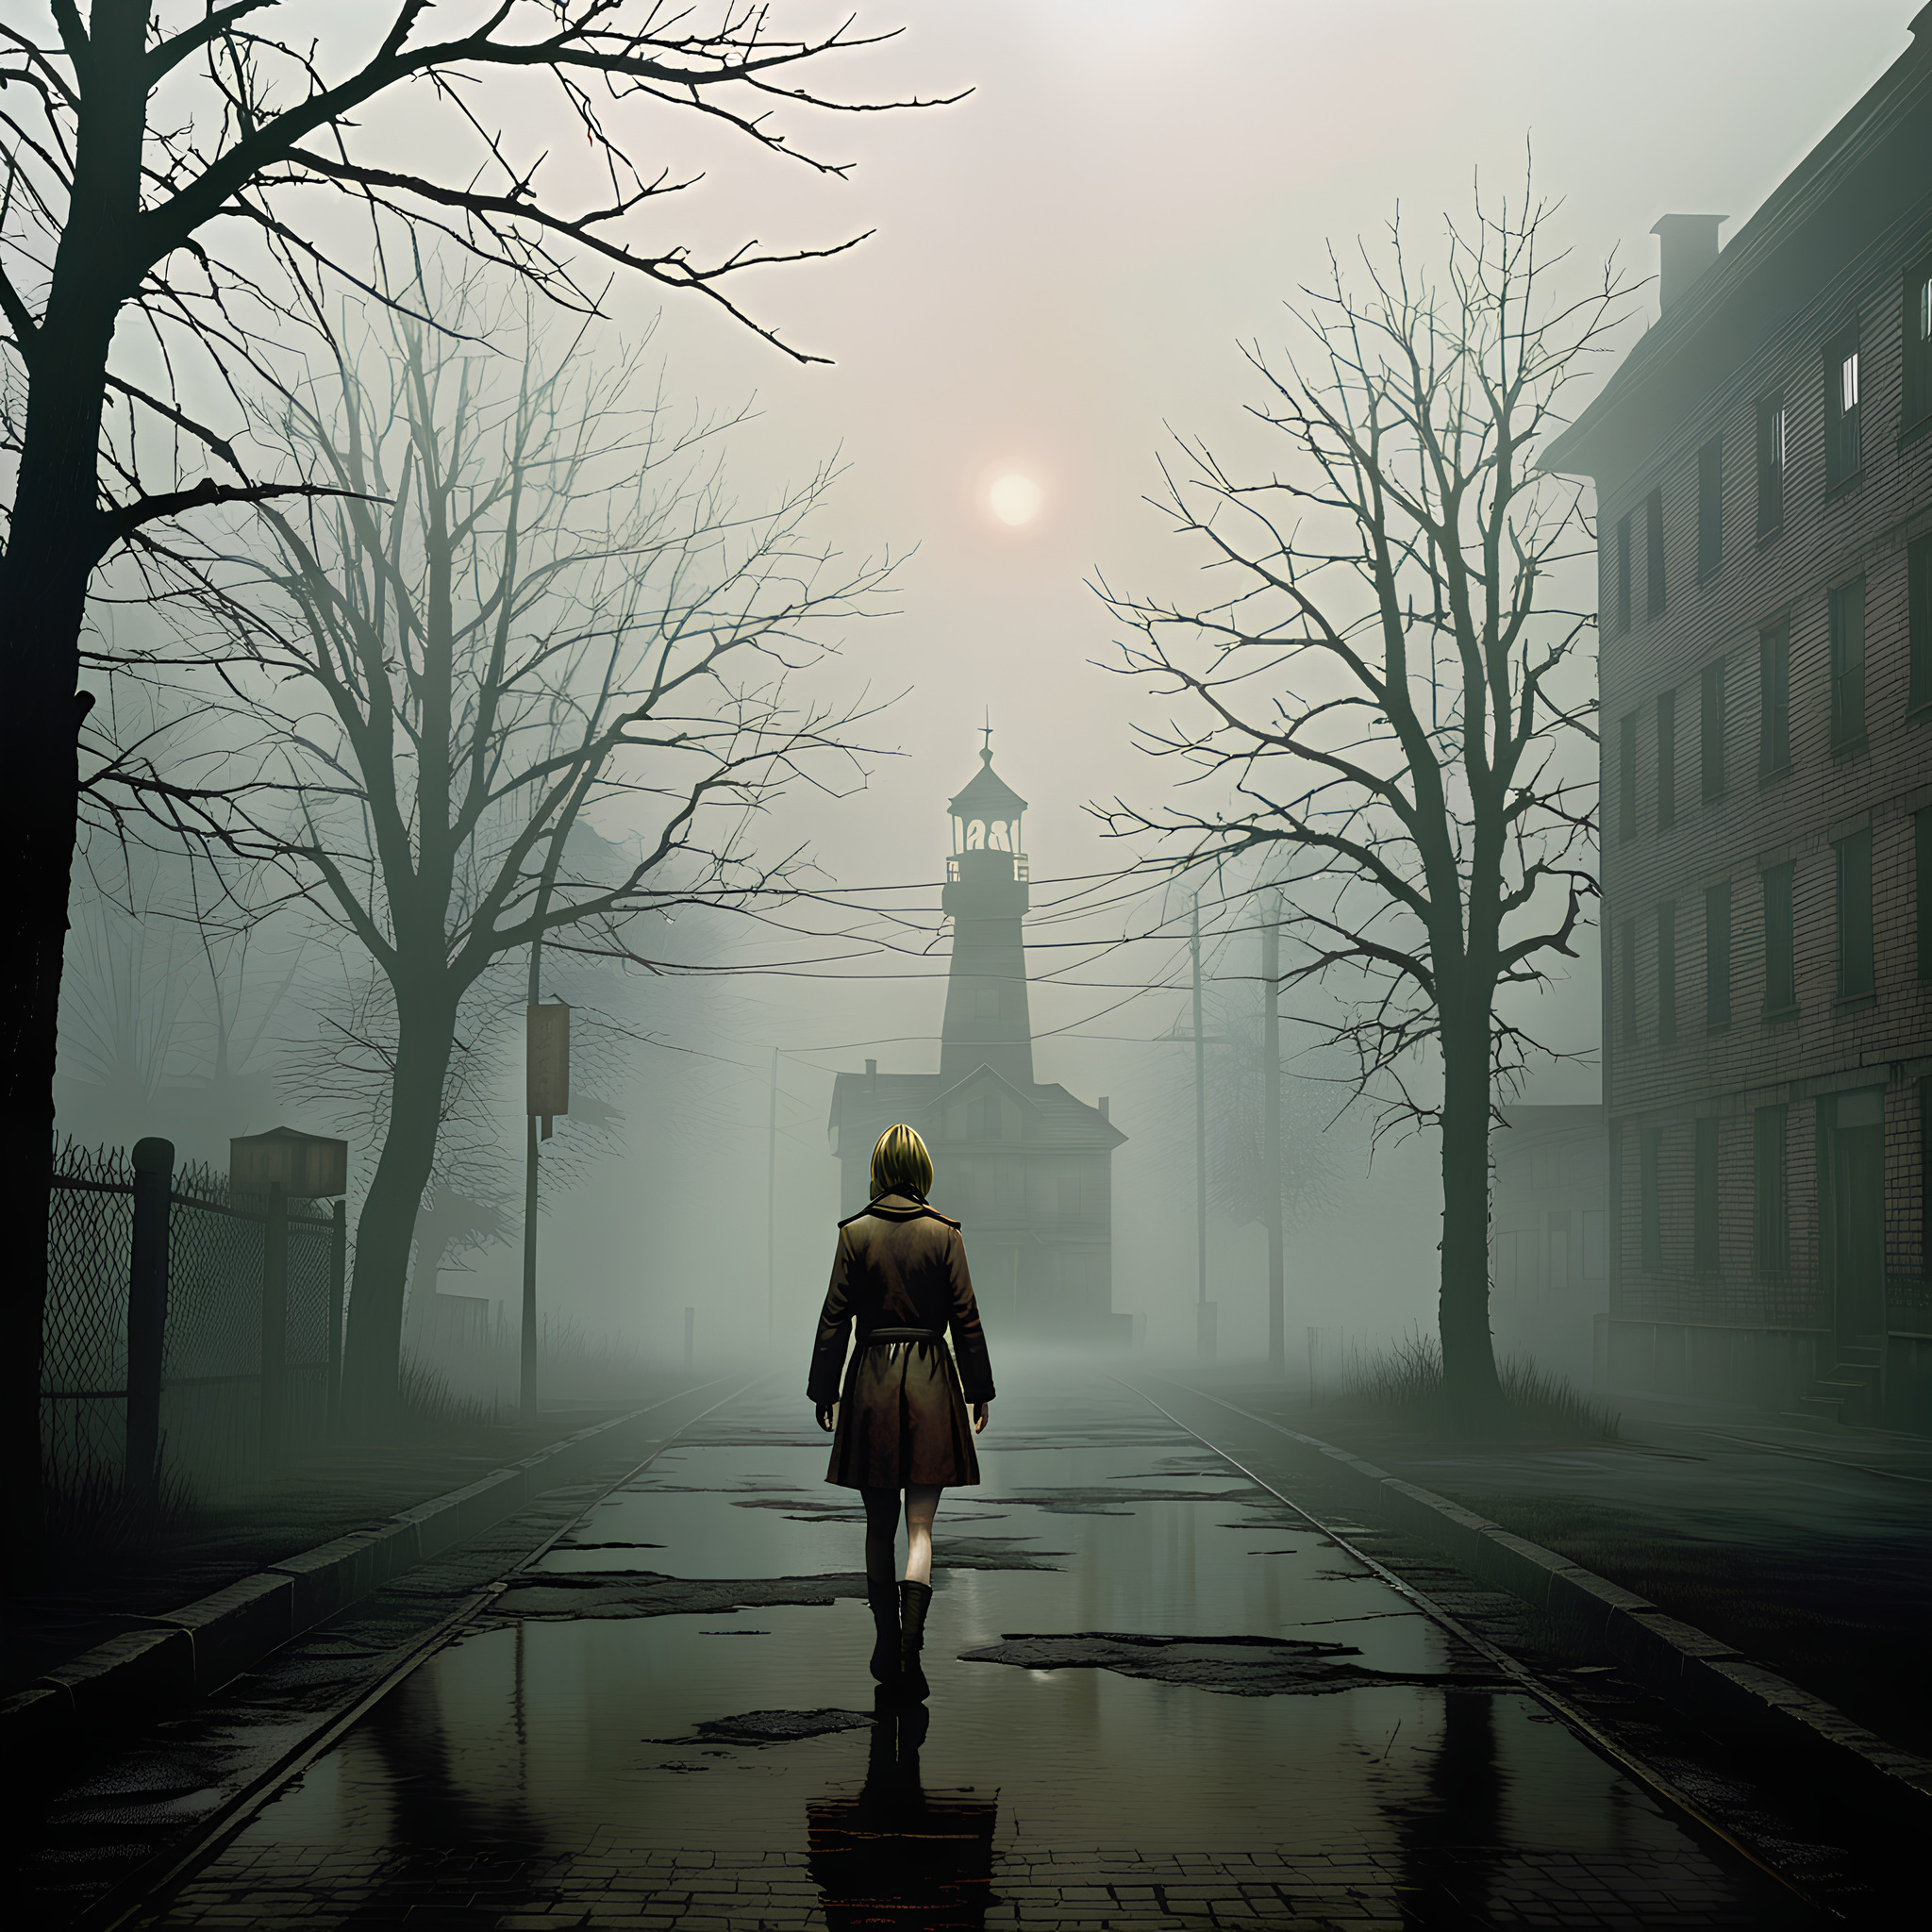 Silent Hill